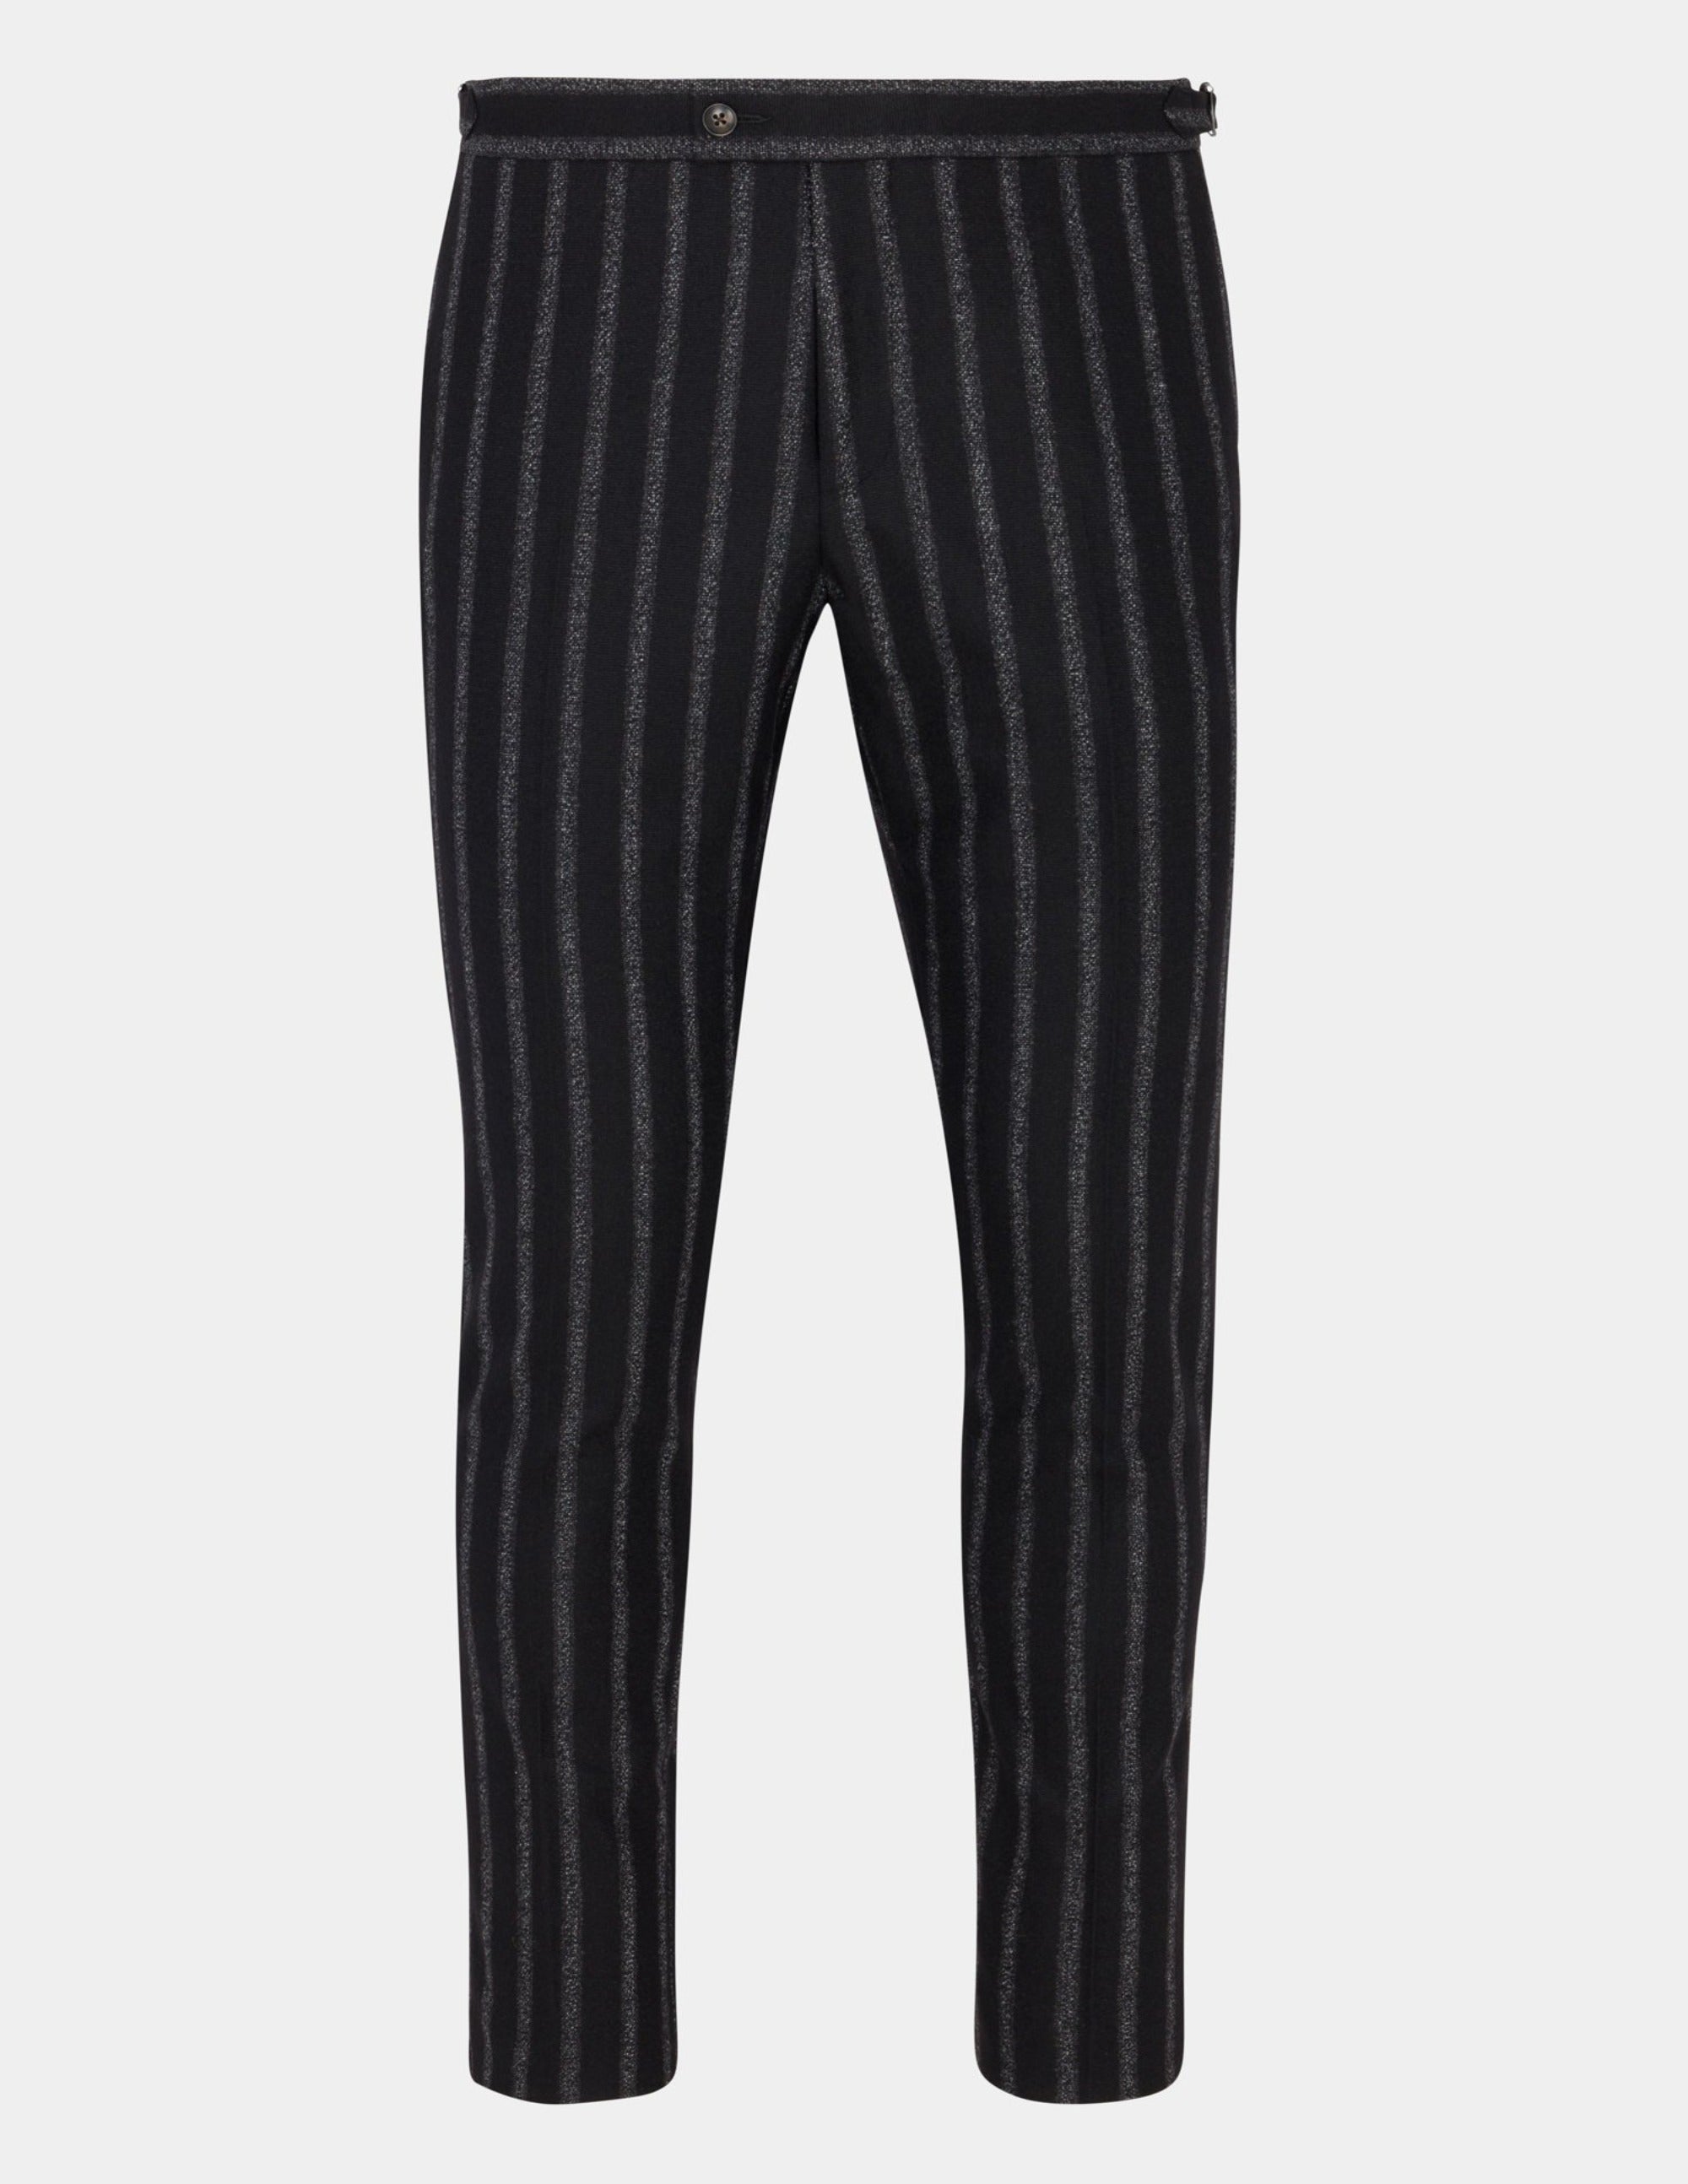 Women's Pants Striped Pants Black and White XS - Walmart.com